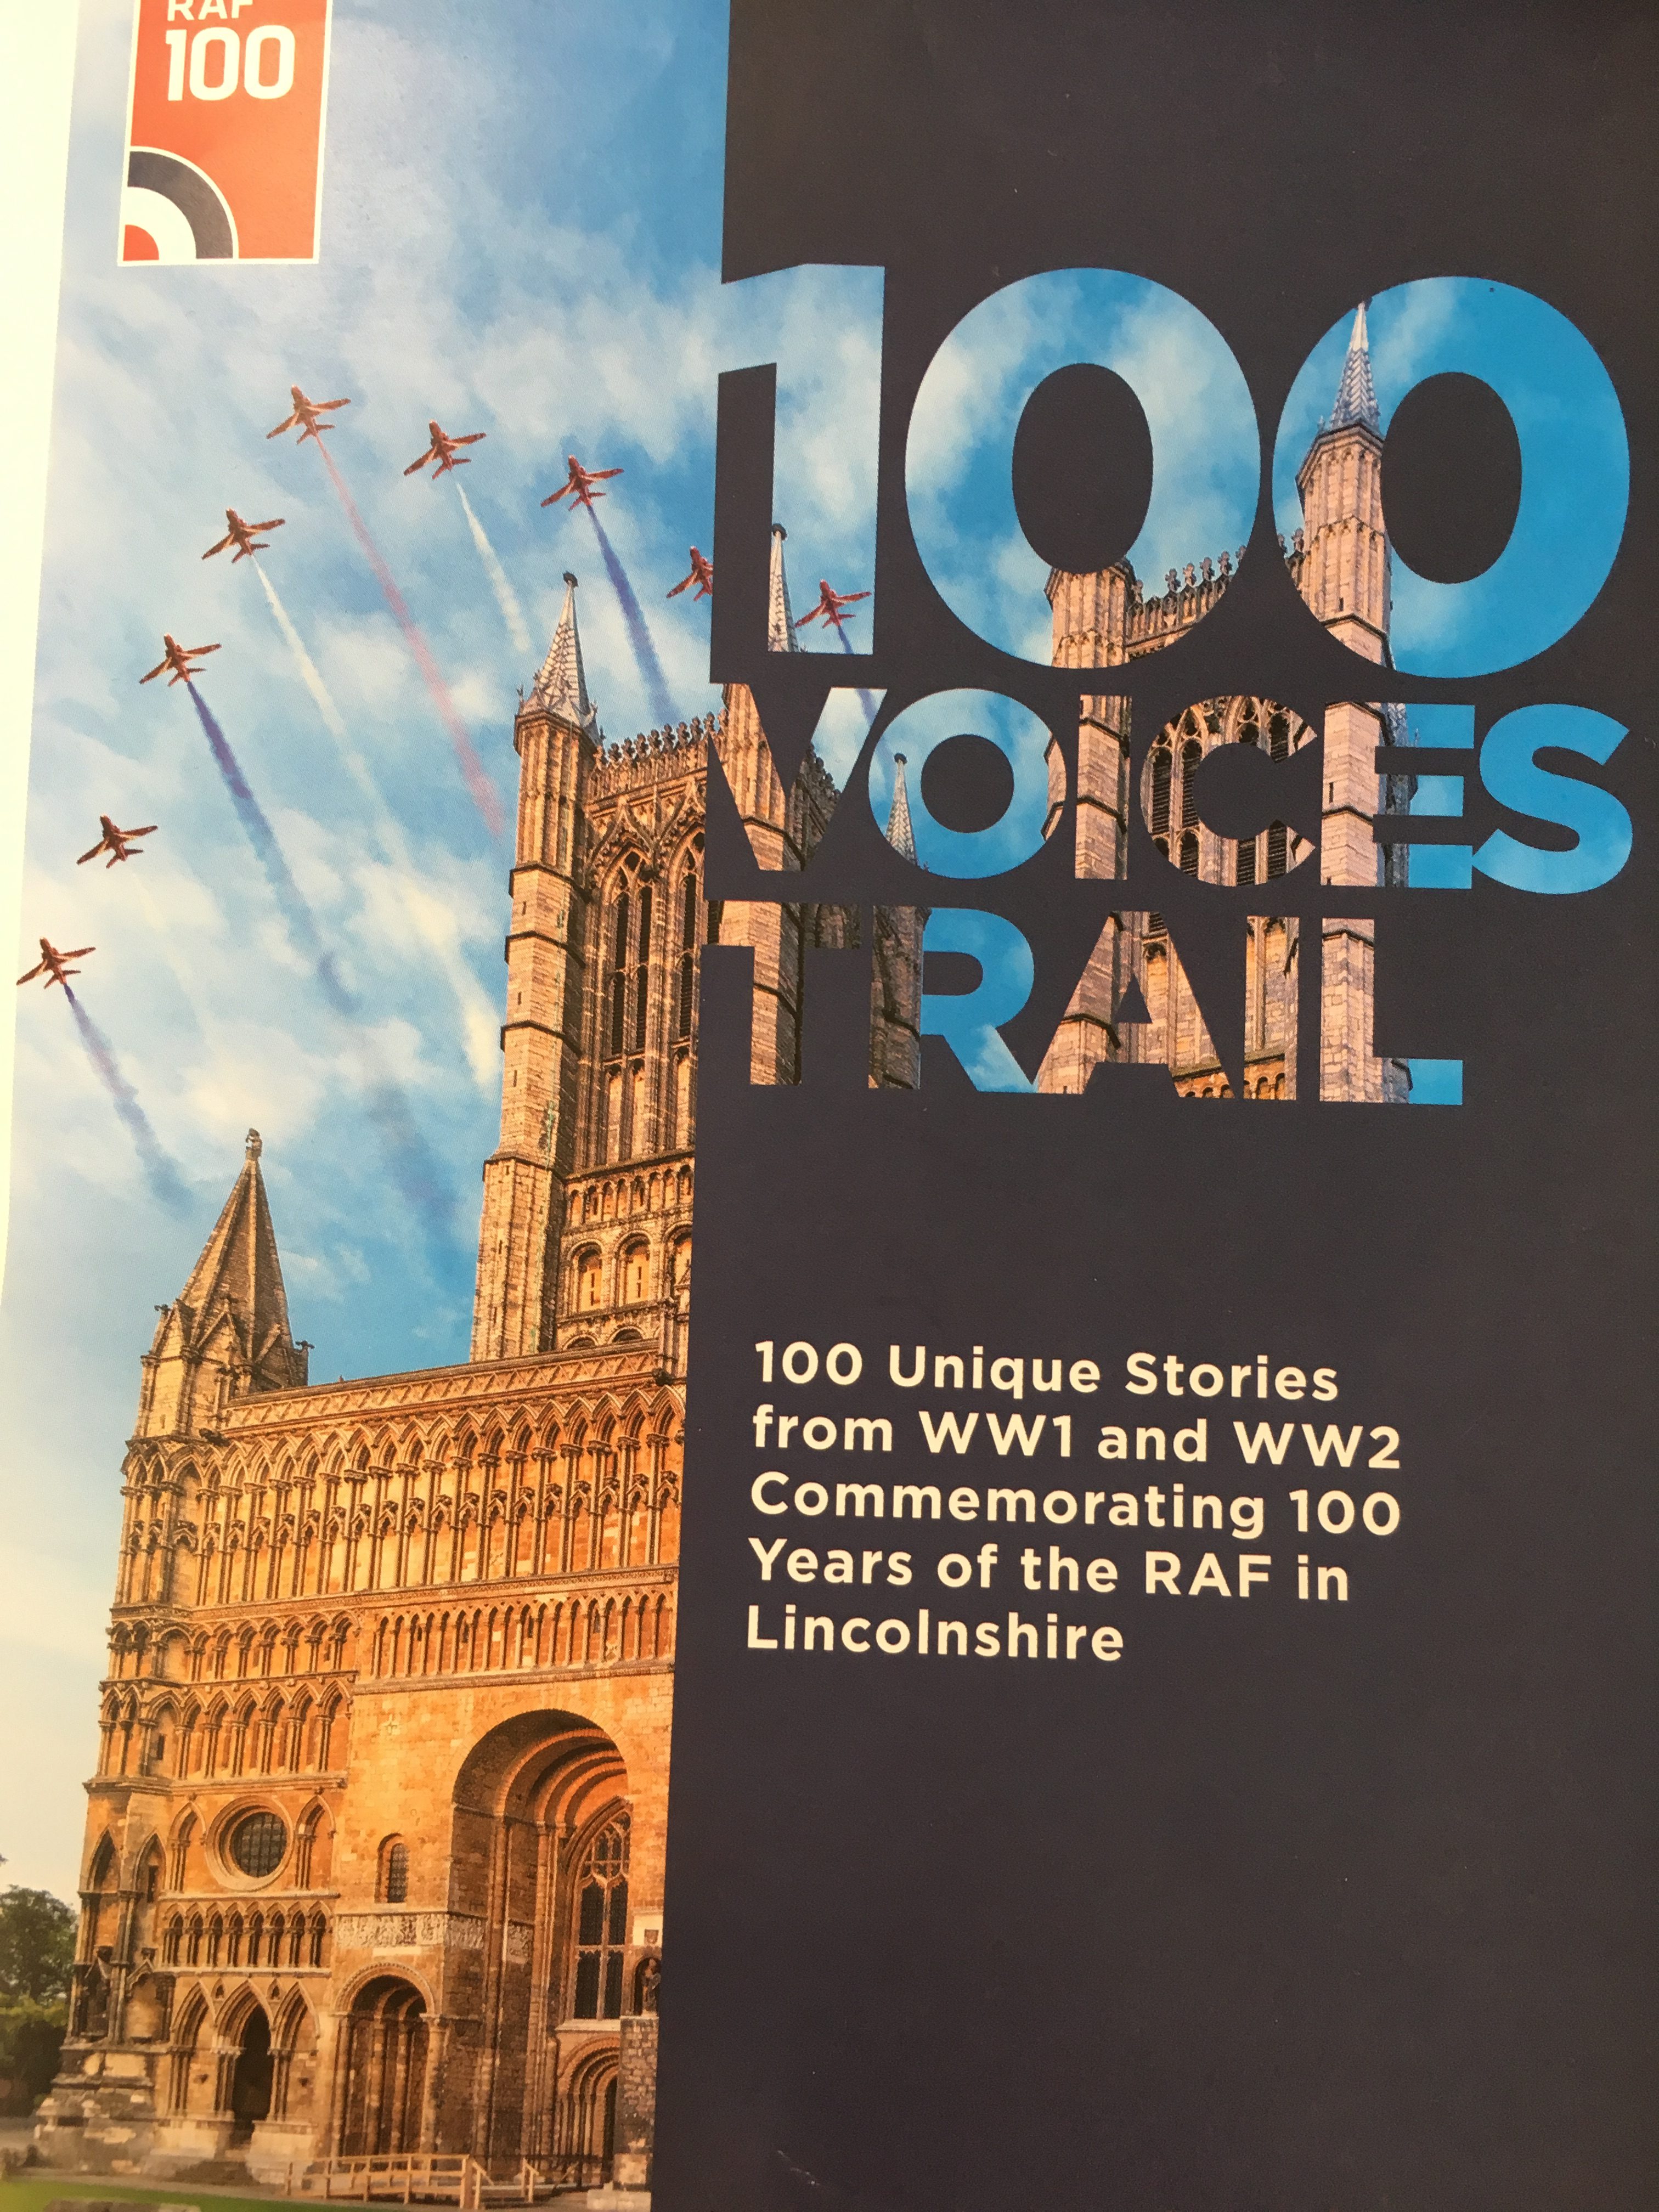 100 Voices Trail